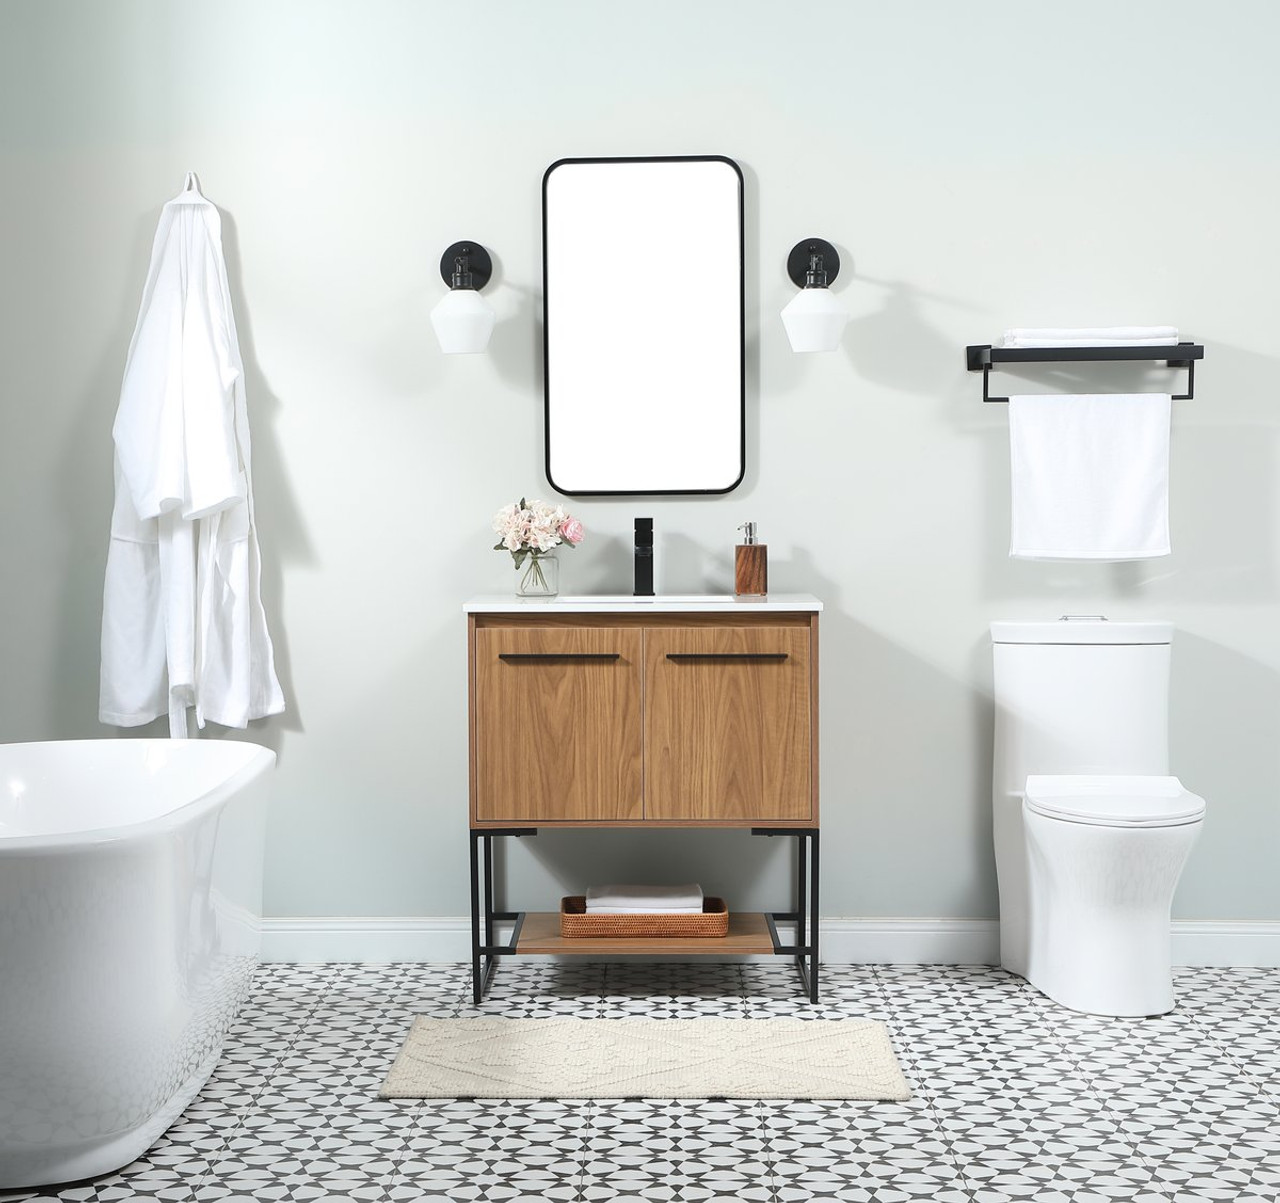 Elegant Decor VF42530WB 30 inch single bathroom vanity in walnut brown